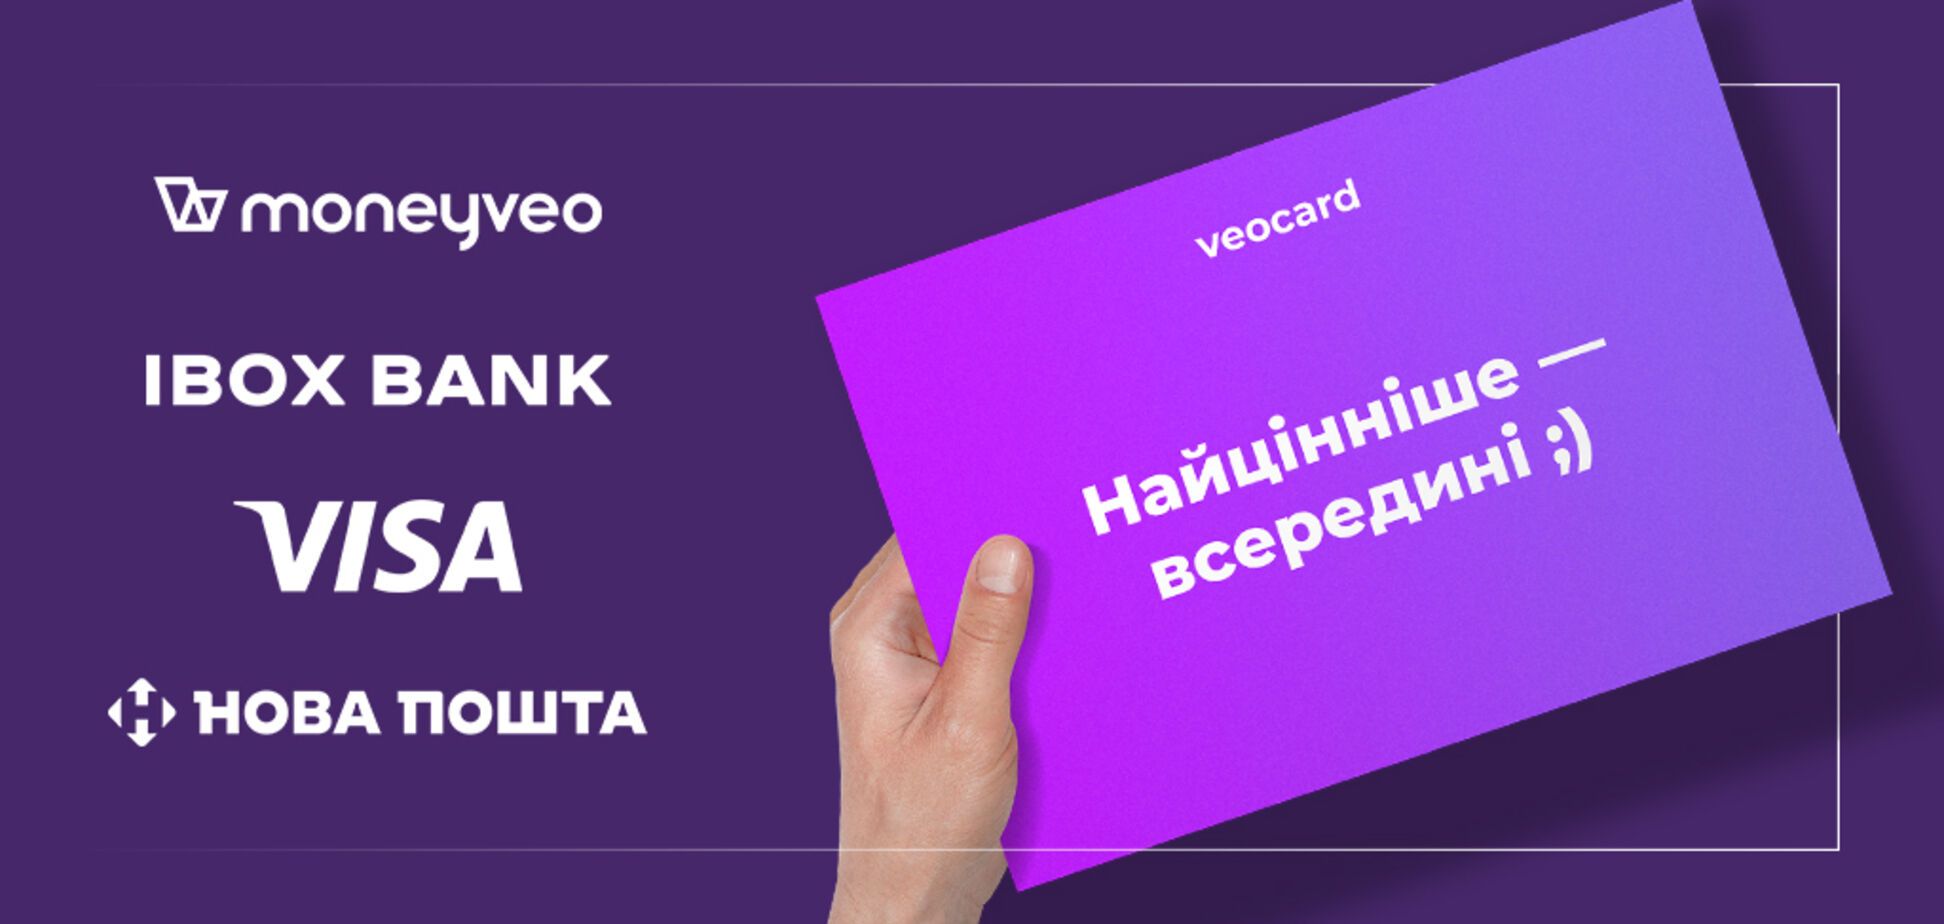 Moneyveo выпустит платежную карту Veocard при поддержке IBOX BANK